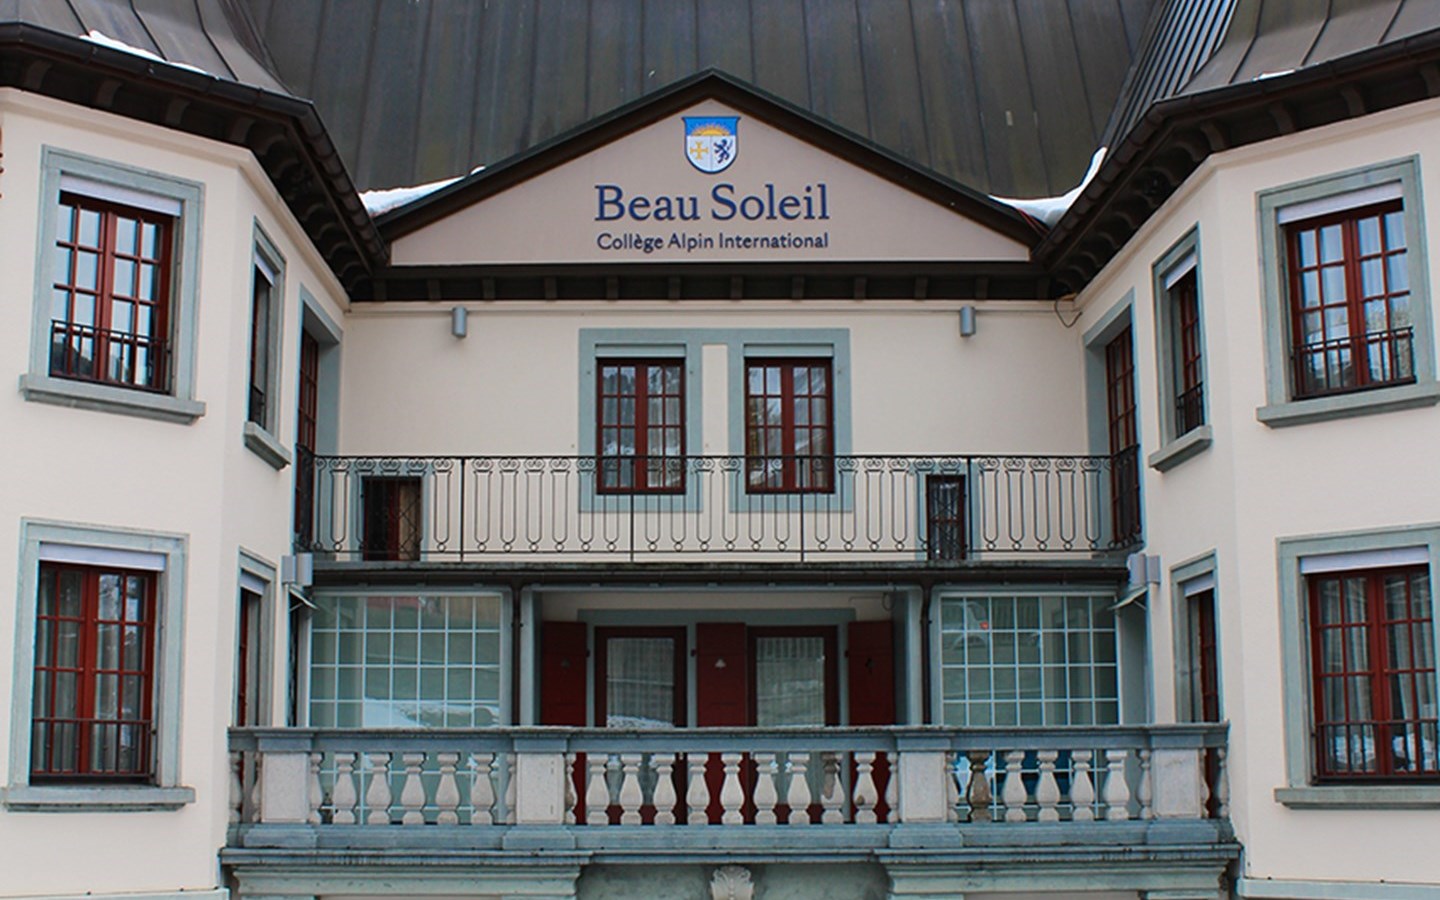 College Alpin International Beau Soleil, Villars-sur-Ollon, Switzerland